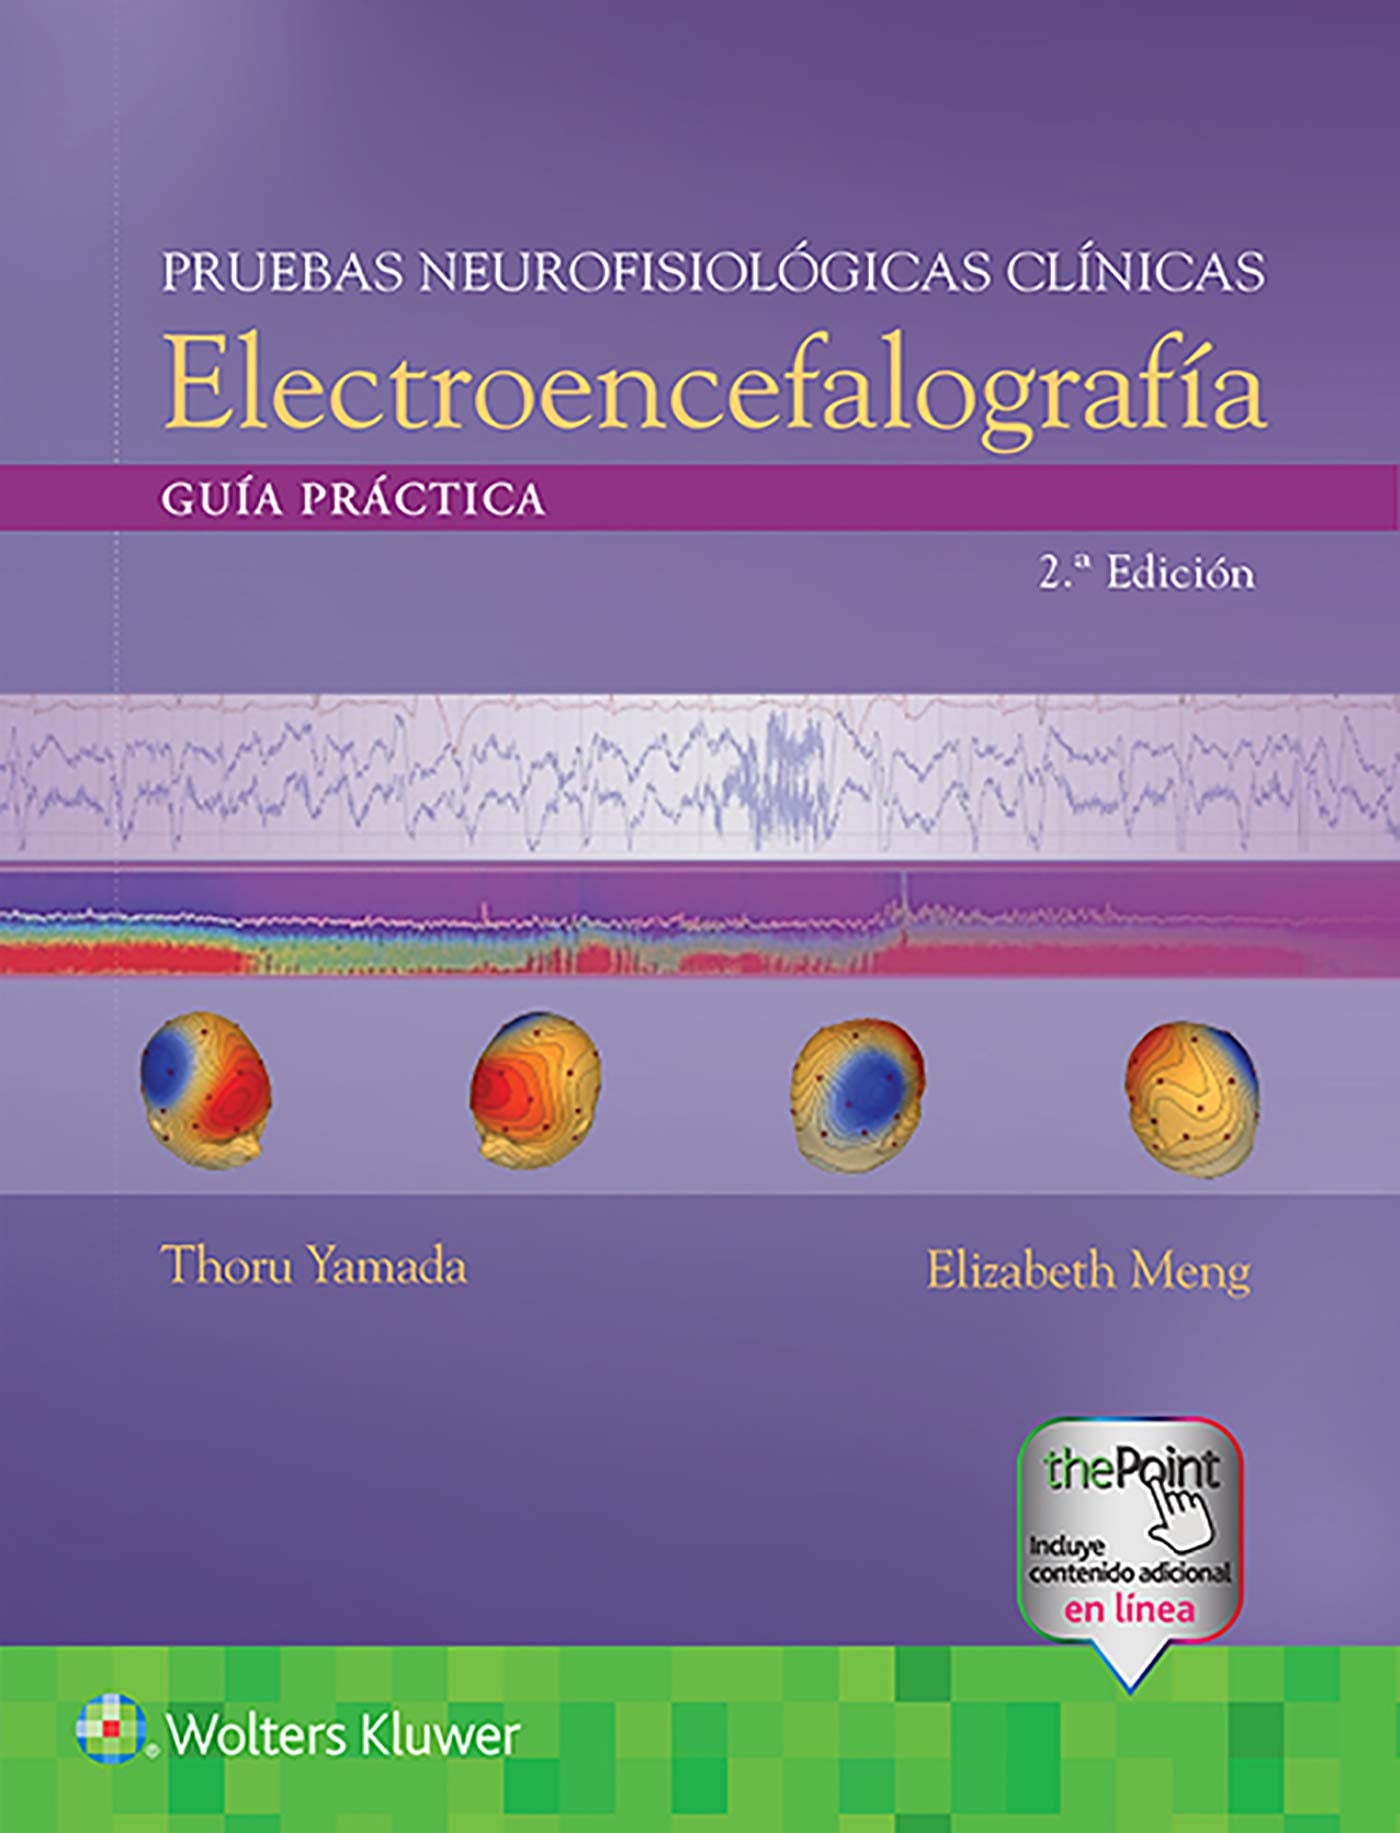 GUÍA PRÁCTICA PARA PRUEBAS NEUROFISIOLÓGICAS CLÍNICAS EEG- EDICIÓN 2.ª AÑO 2020